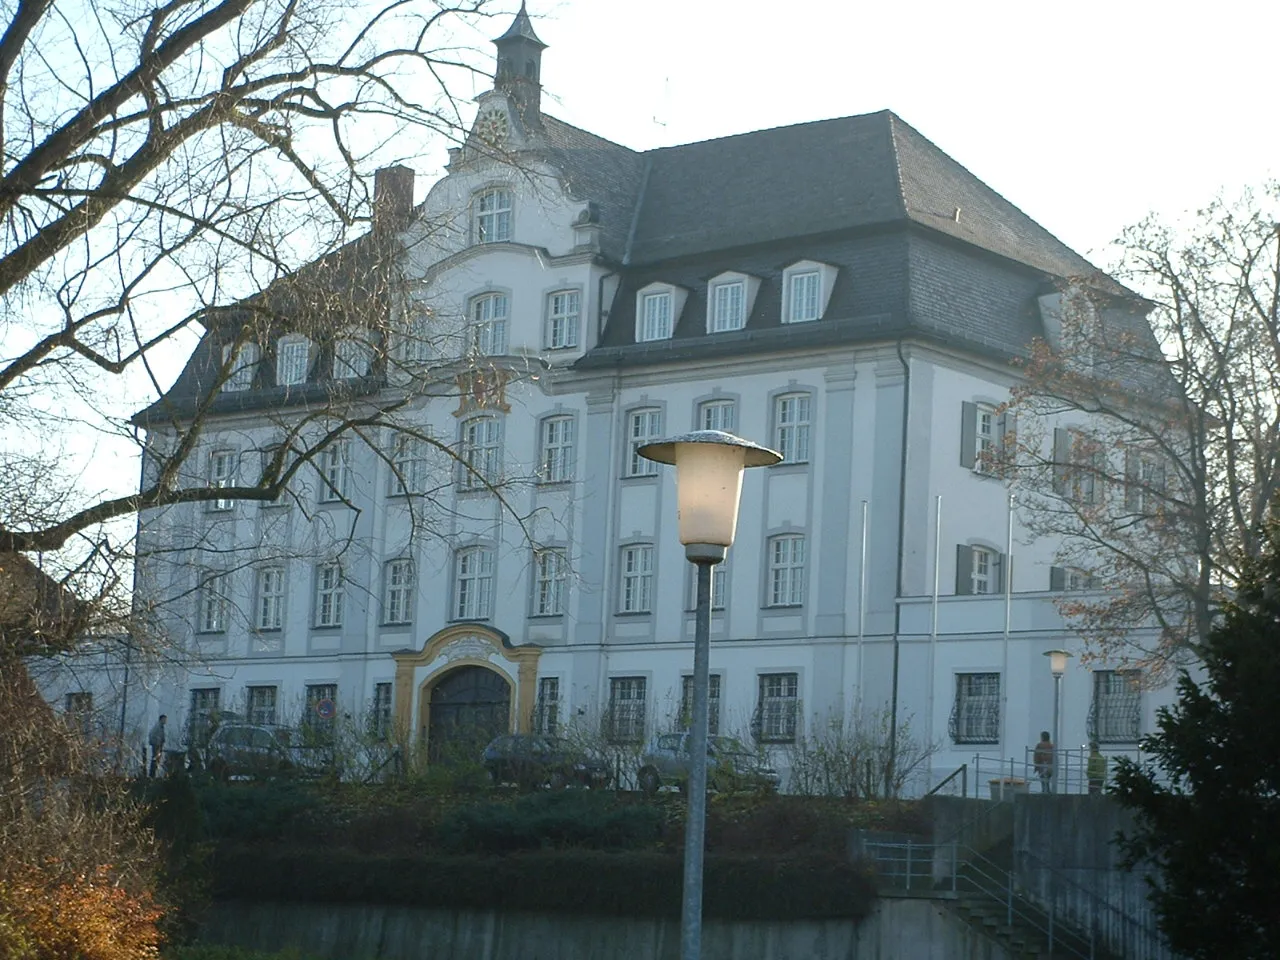 Image of Tübingen